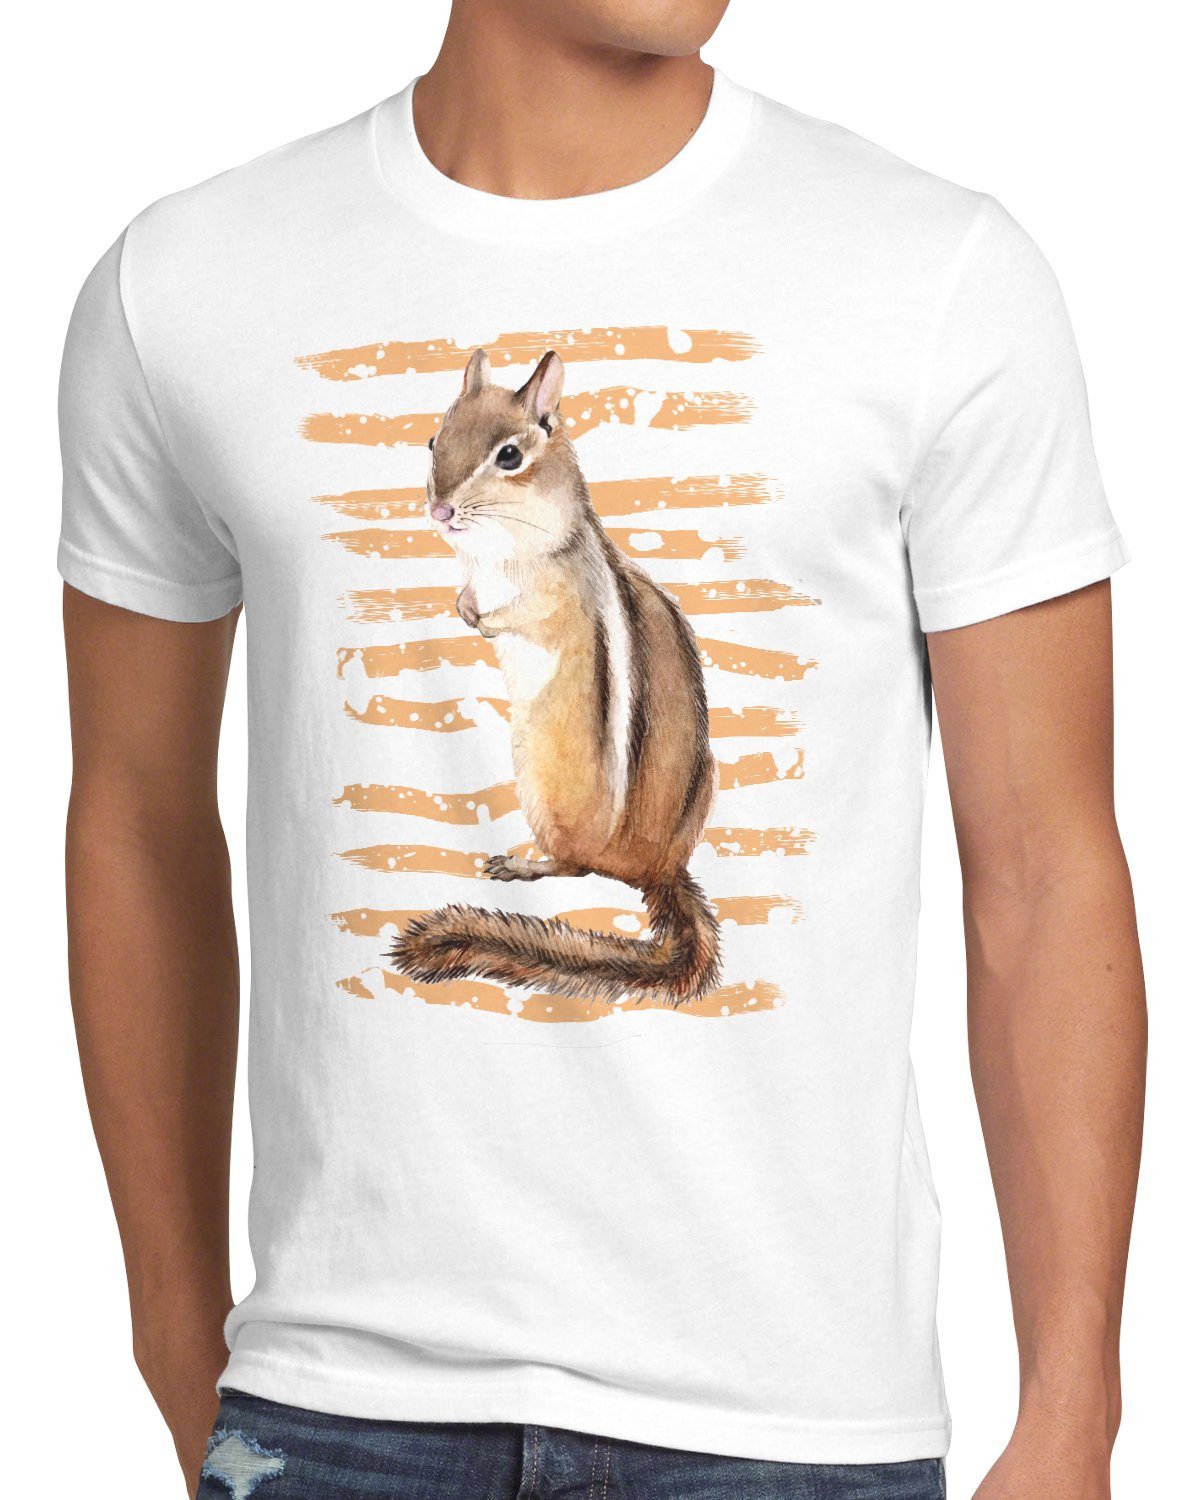 T-Shirt Herren Streifenhörnchen style3 chipmunk forst Print-Shirt wildnis wald